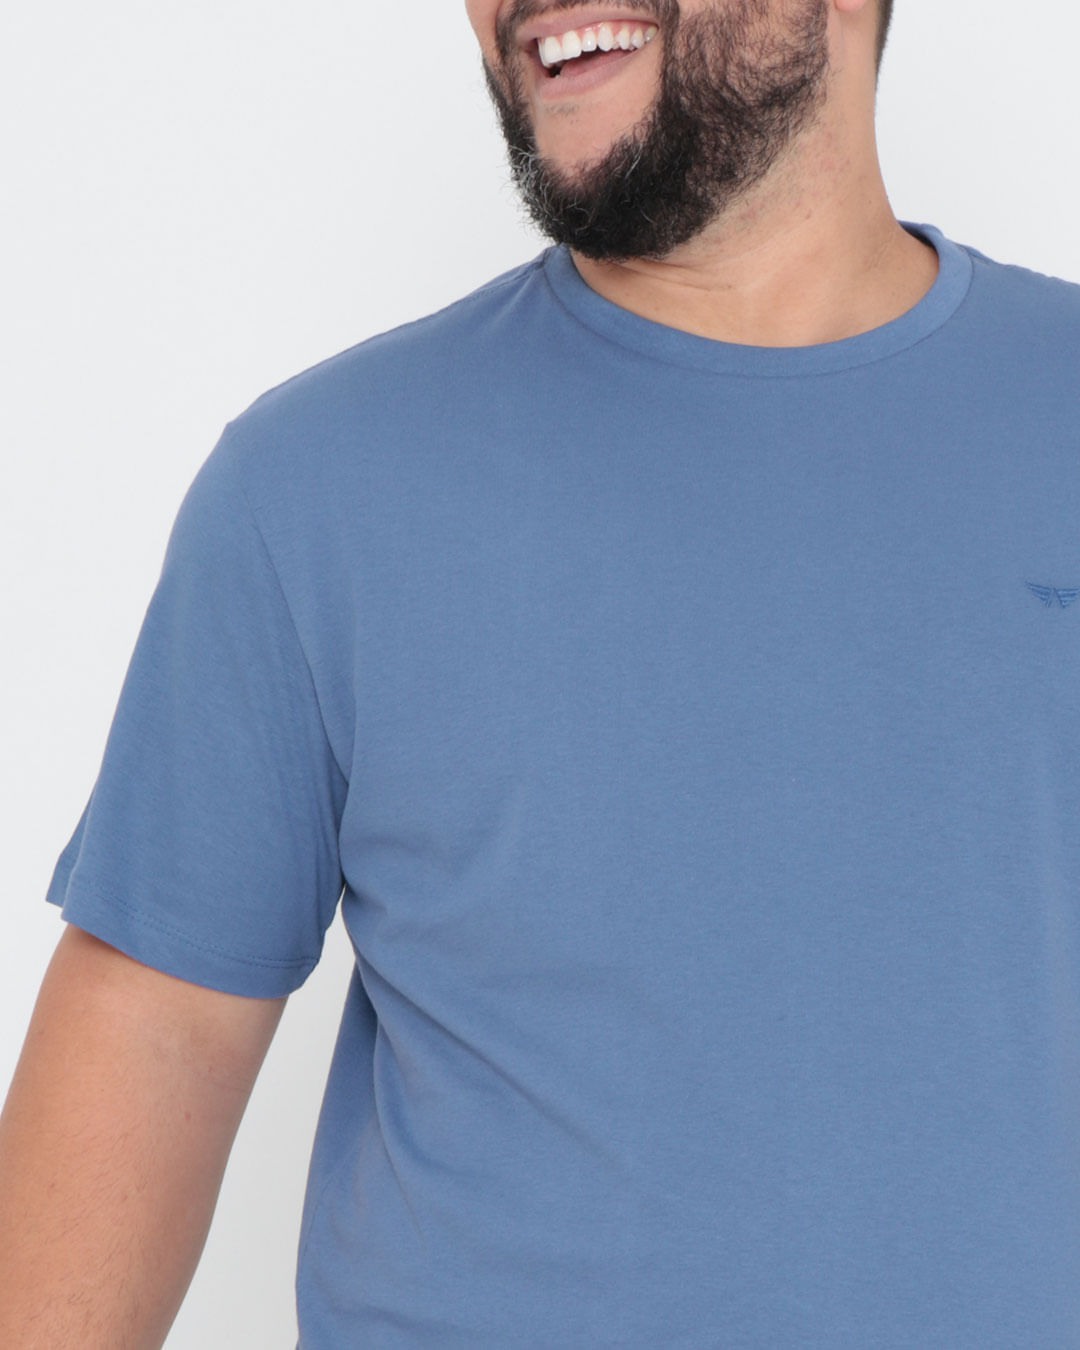 Camiseta-Basica-Cpm1-61100-Azul-Jeans-Pl---Azul-Medio